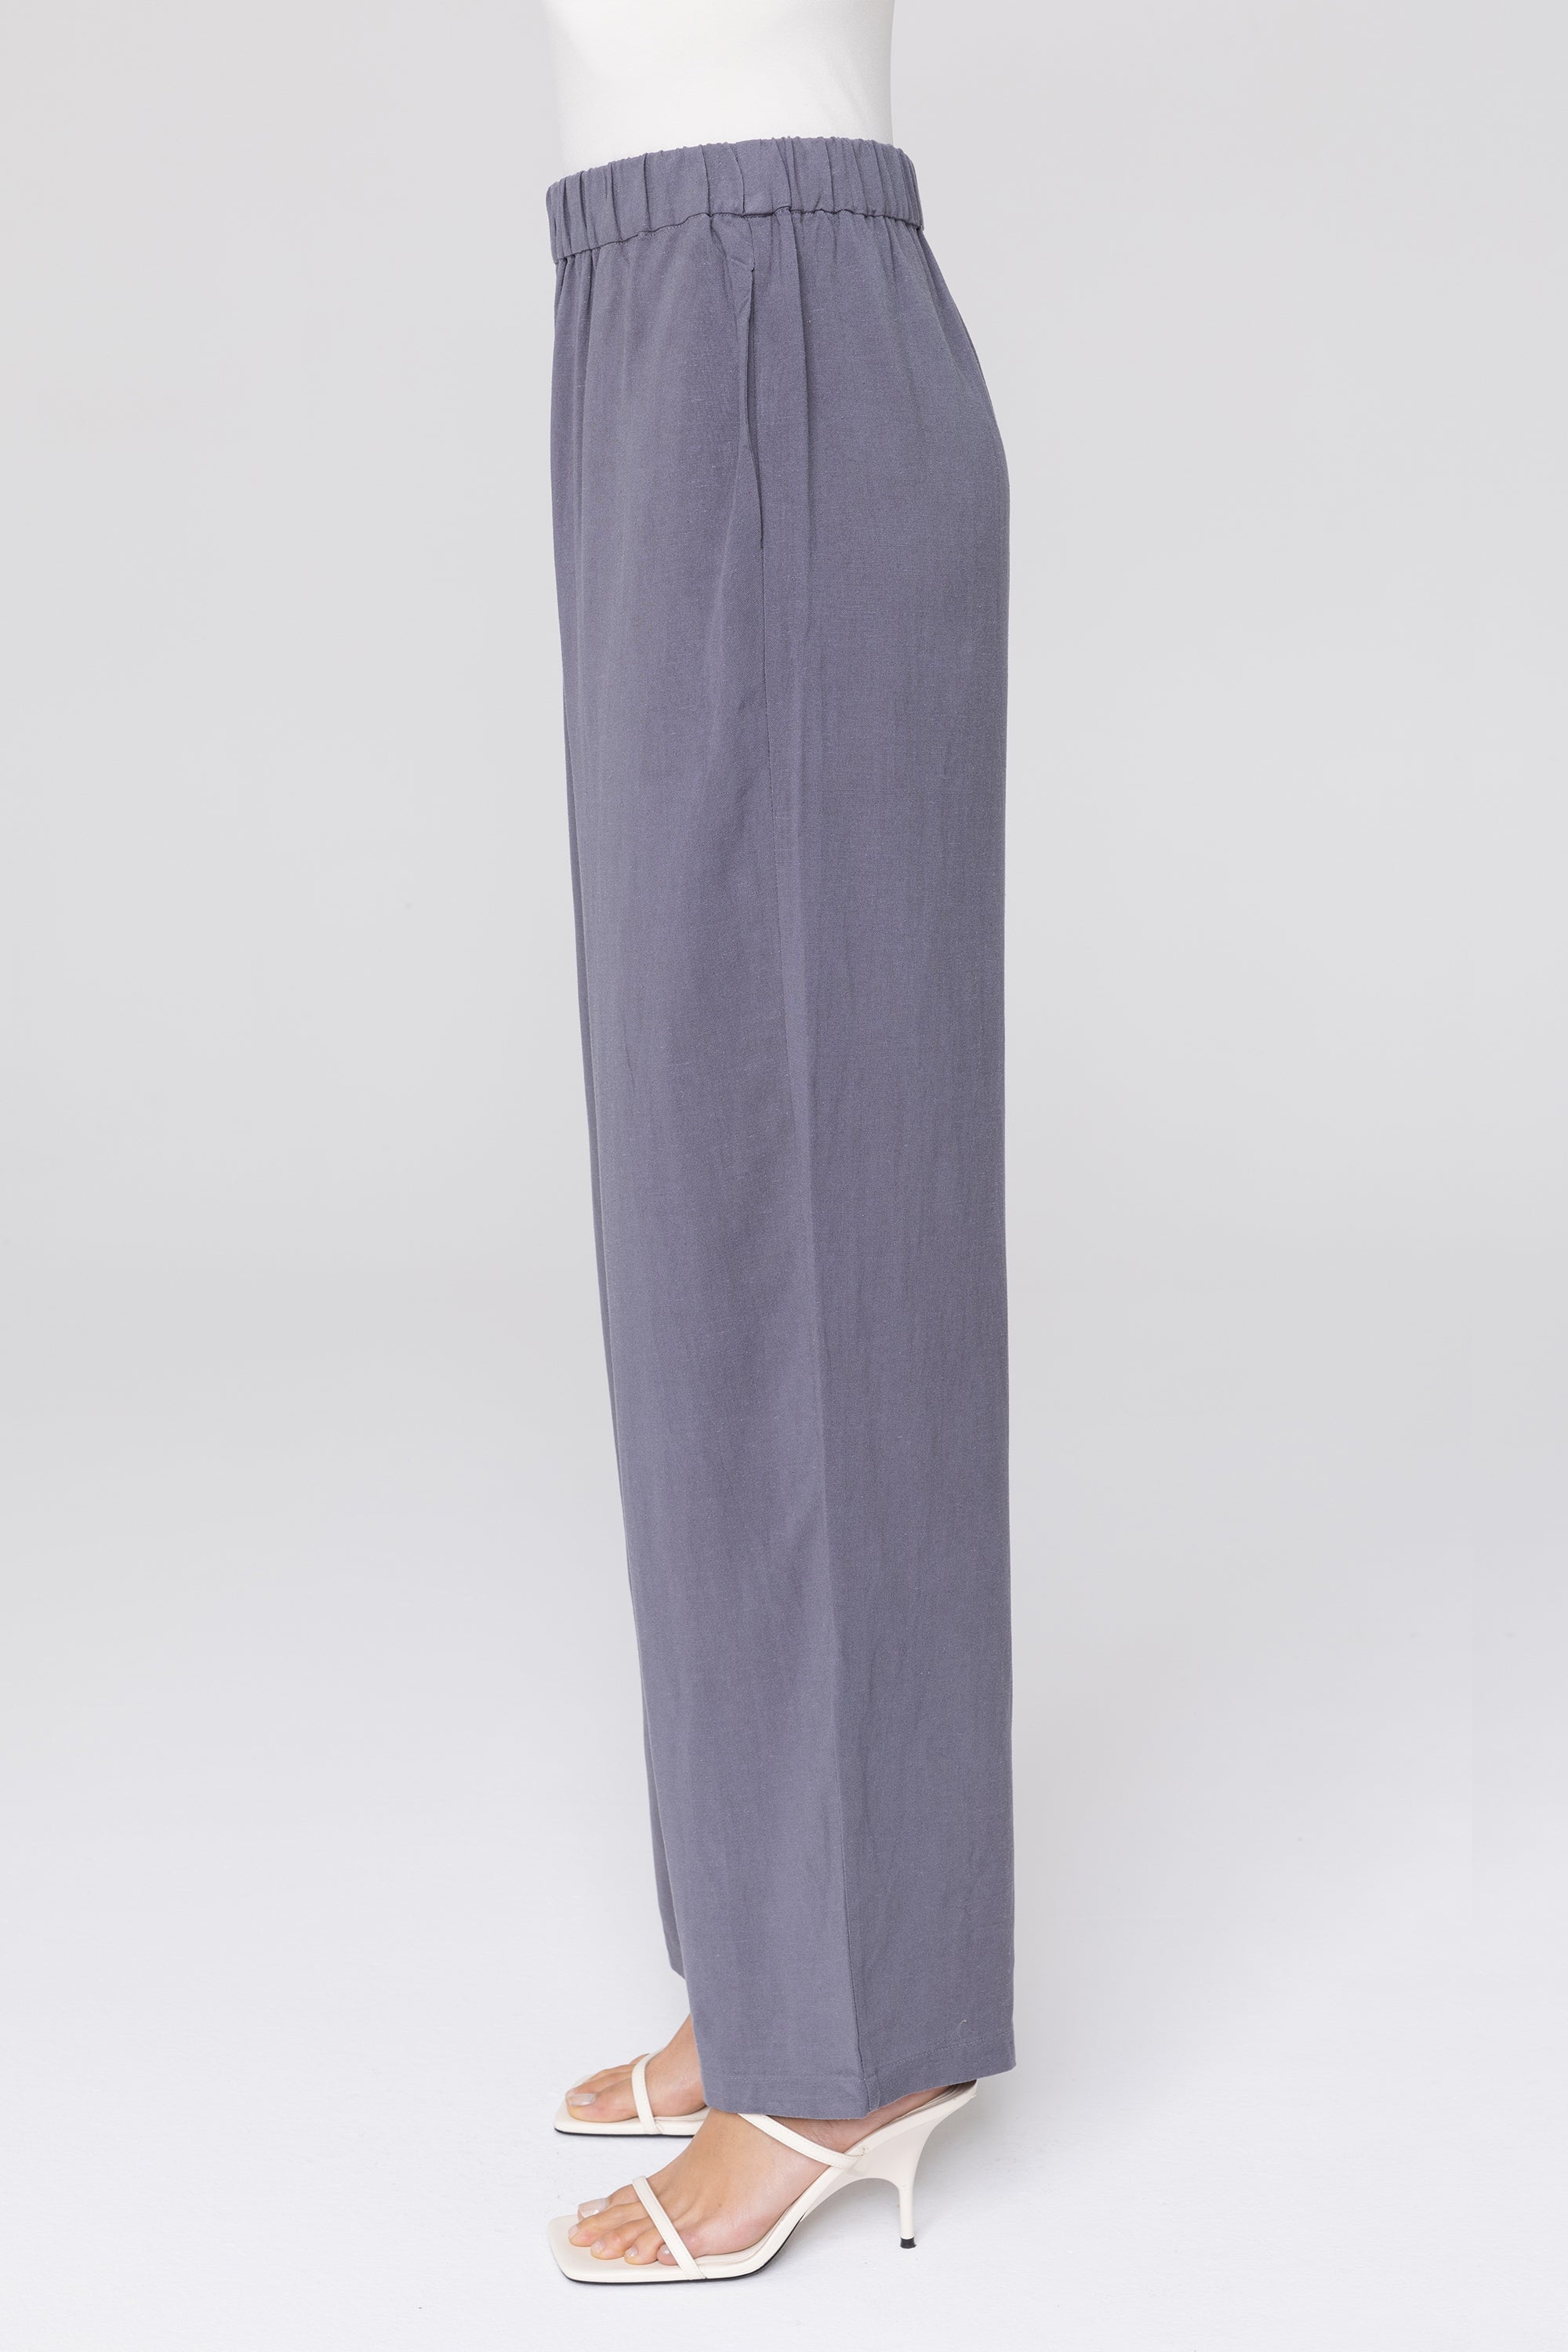 Gemma Linen Wide Leg Pants - Denim Veiled Collection 